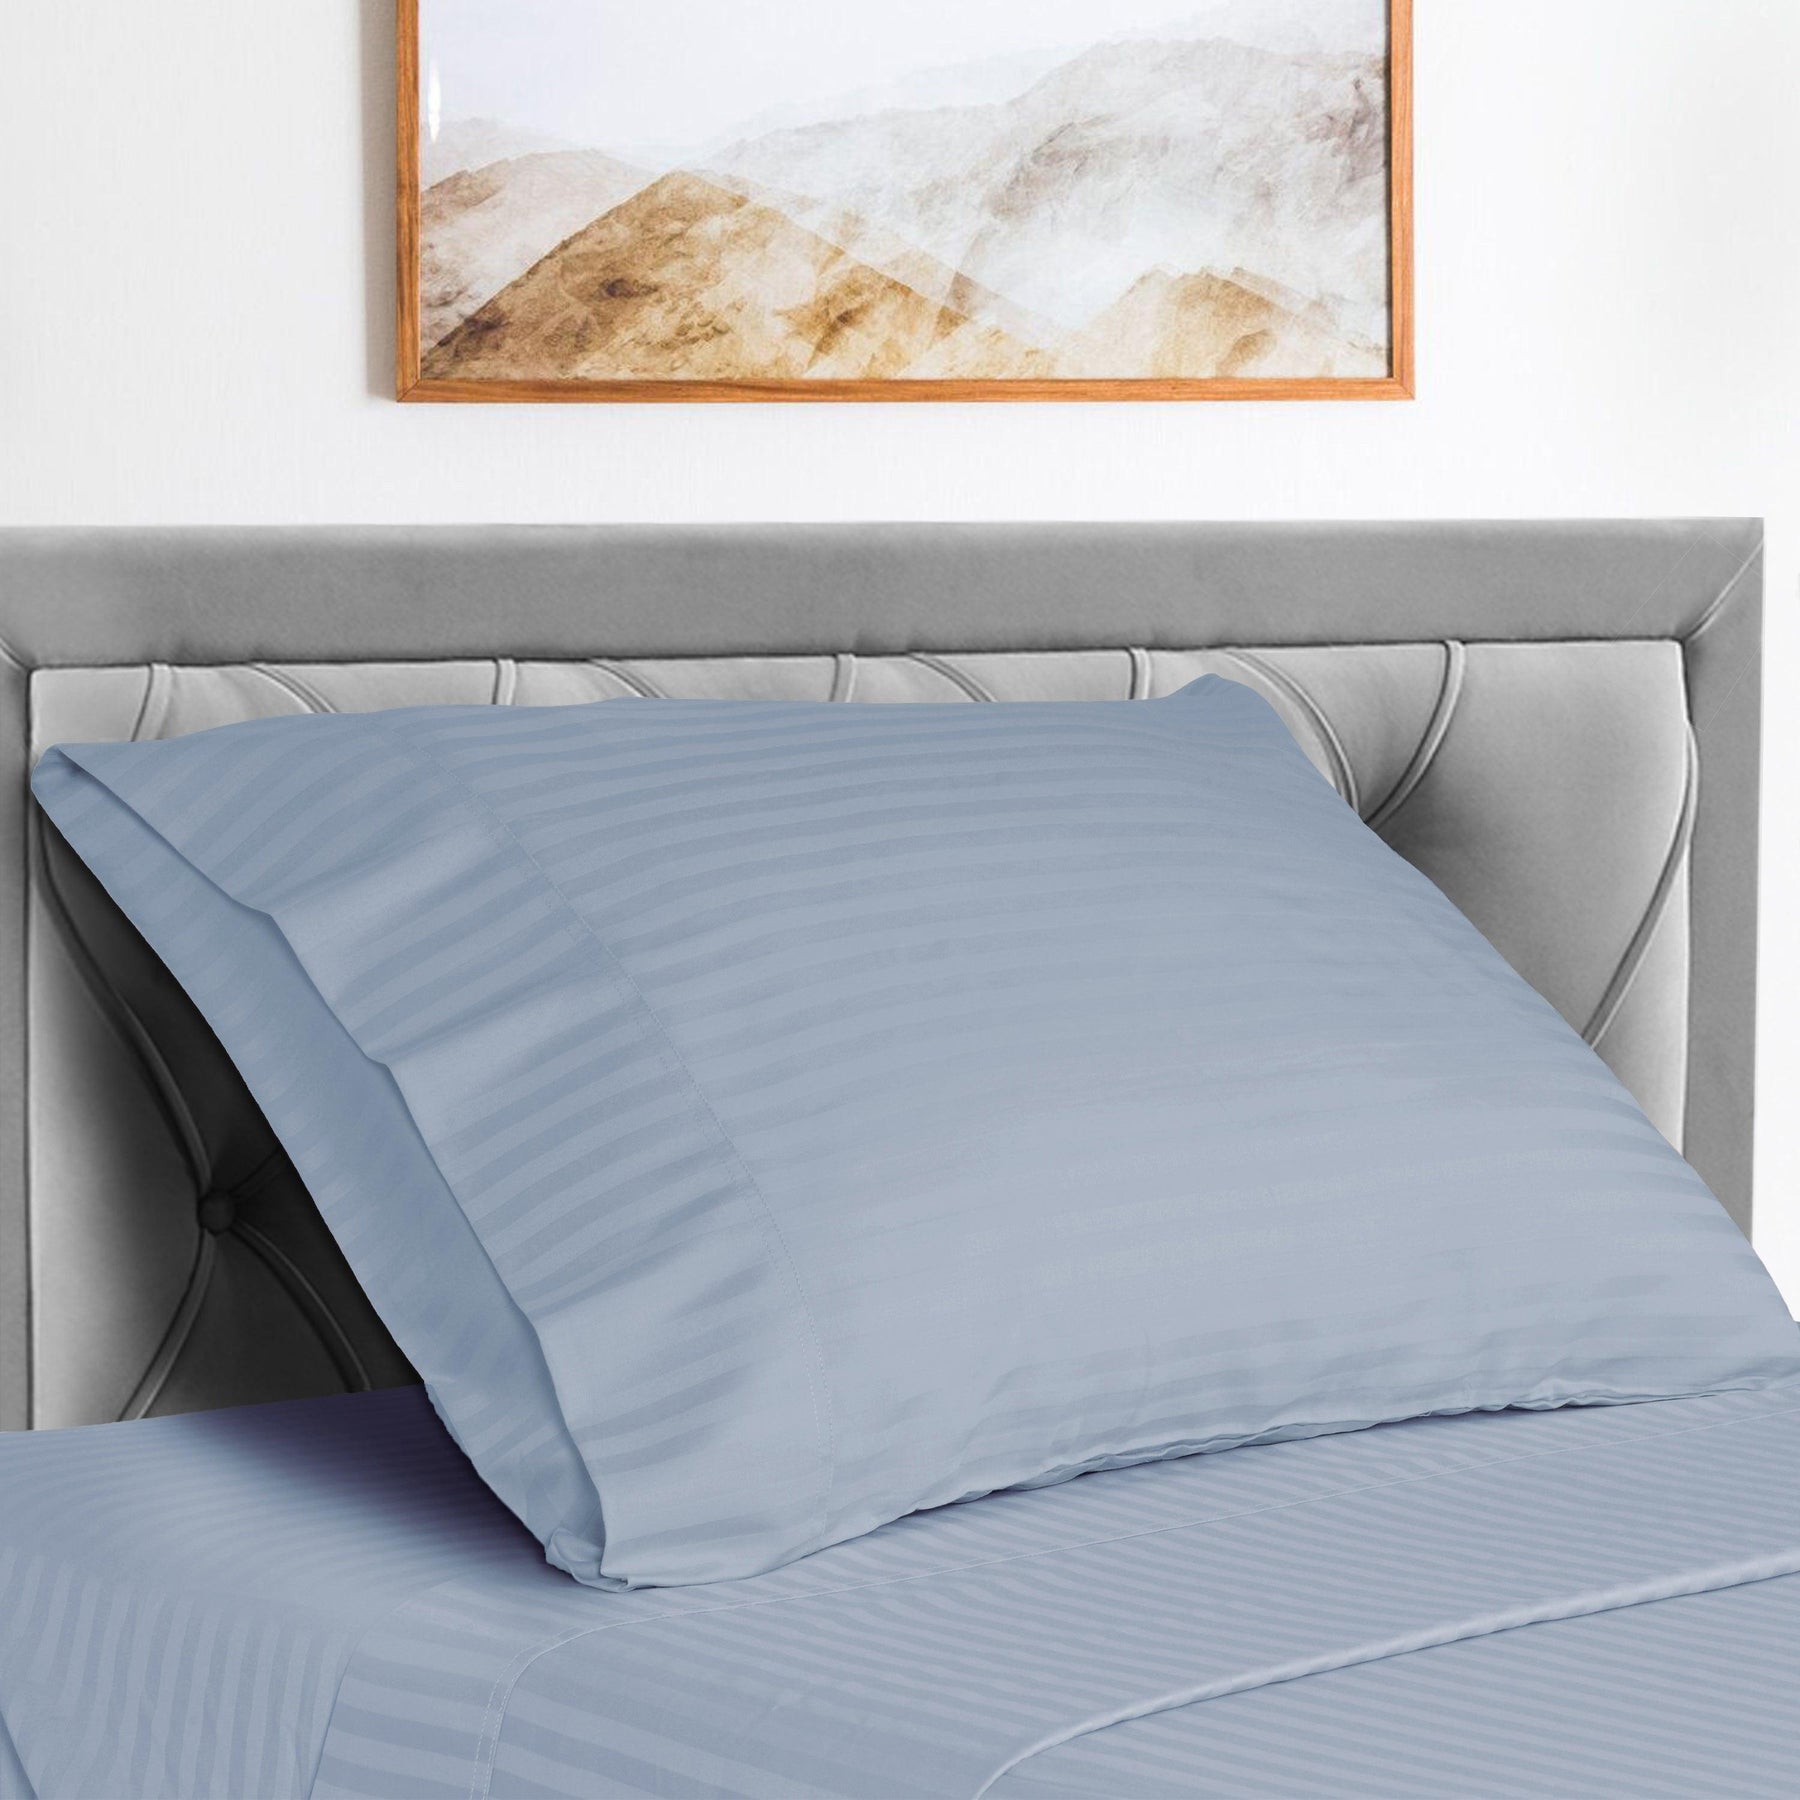  Superior Microfiber Wrinkle Resistant and Breathable Stripe Deep Pocket Bed Sheet Set - Light Blue